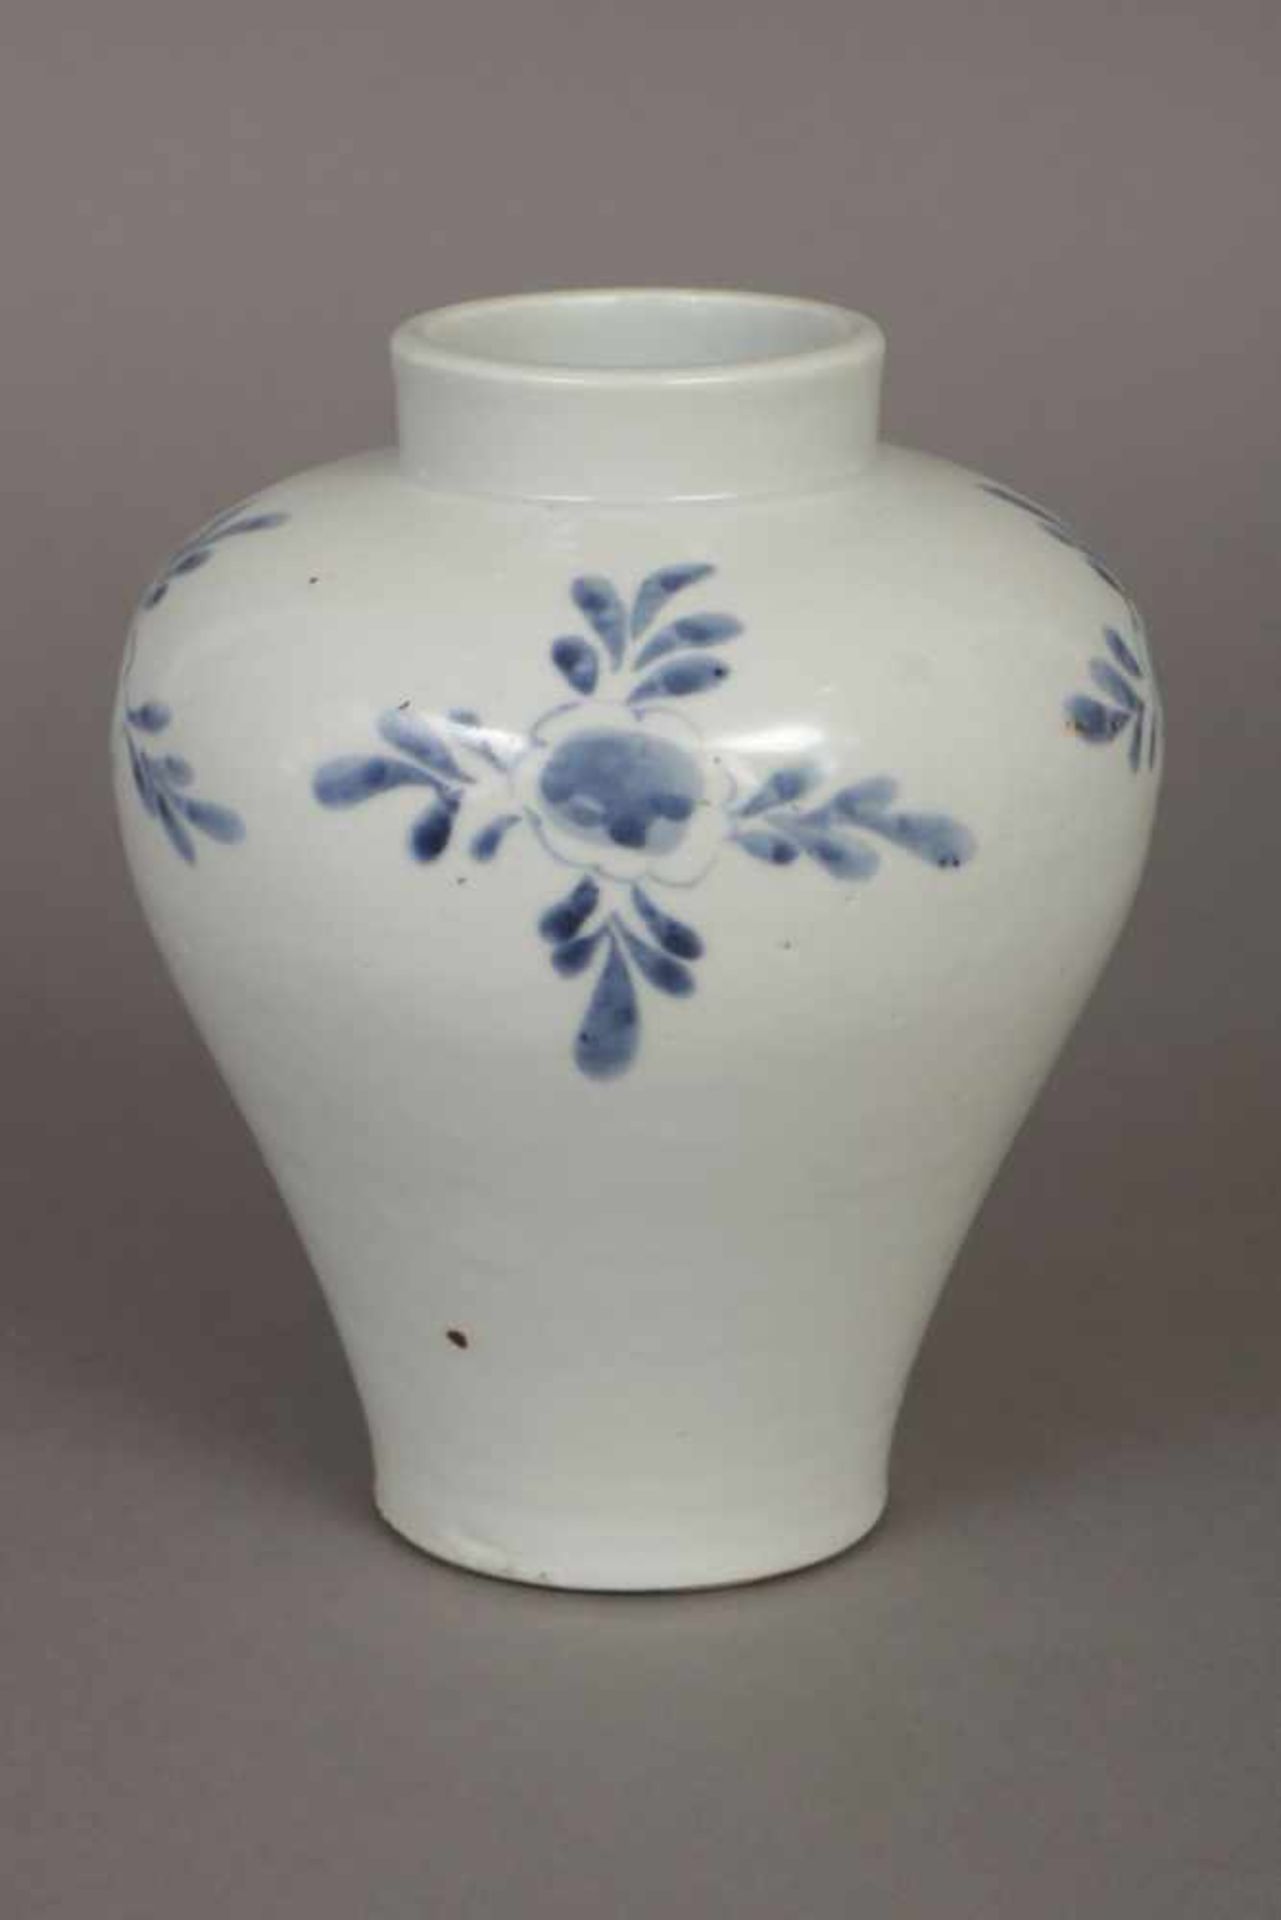 Asiatische Porzellanvase wohl Korea, hochbauchiger, urnenförmiger Korpus, Wandung mit sparsamer